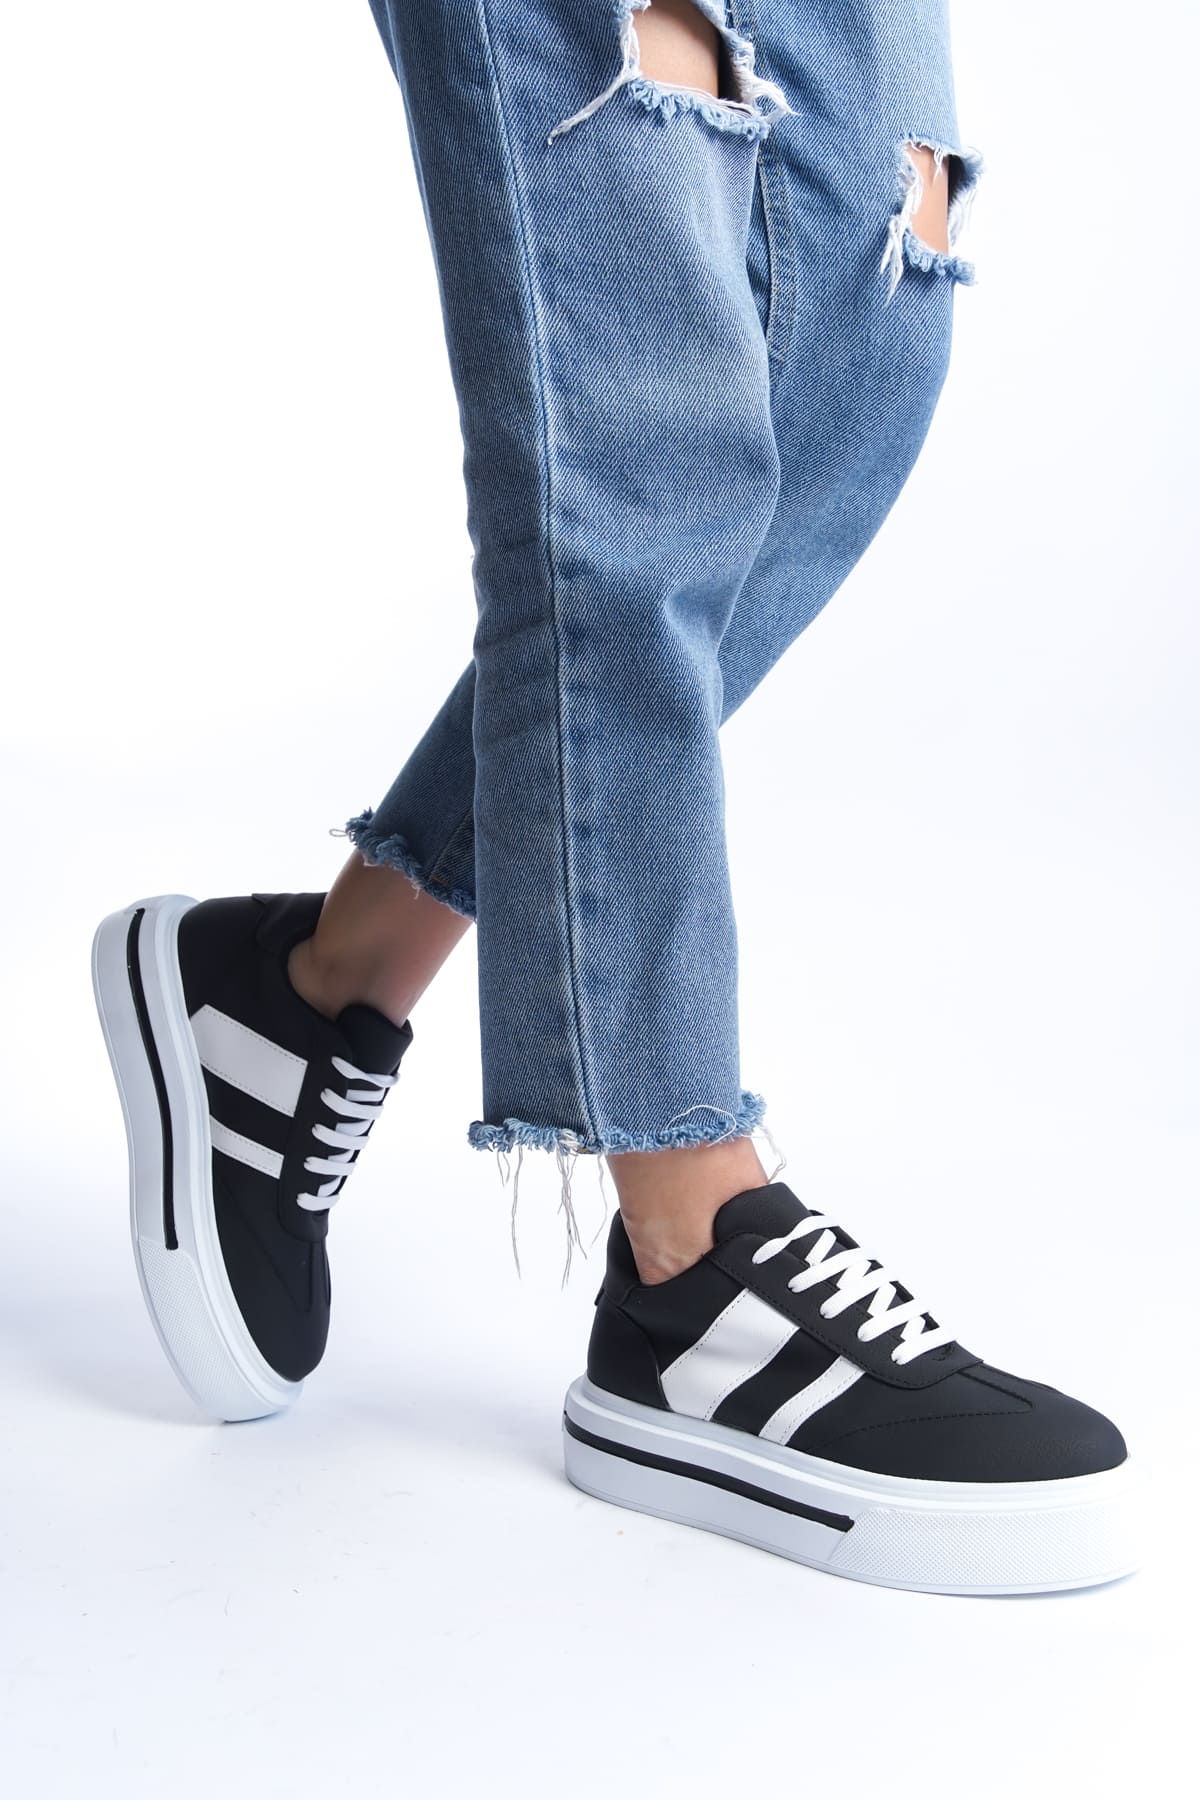 DIAS Bağcıklı Ortopedik Taban Kadın Sneaker Ayakkabı  Siyah/Beyaz